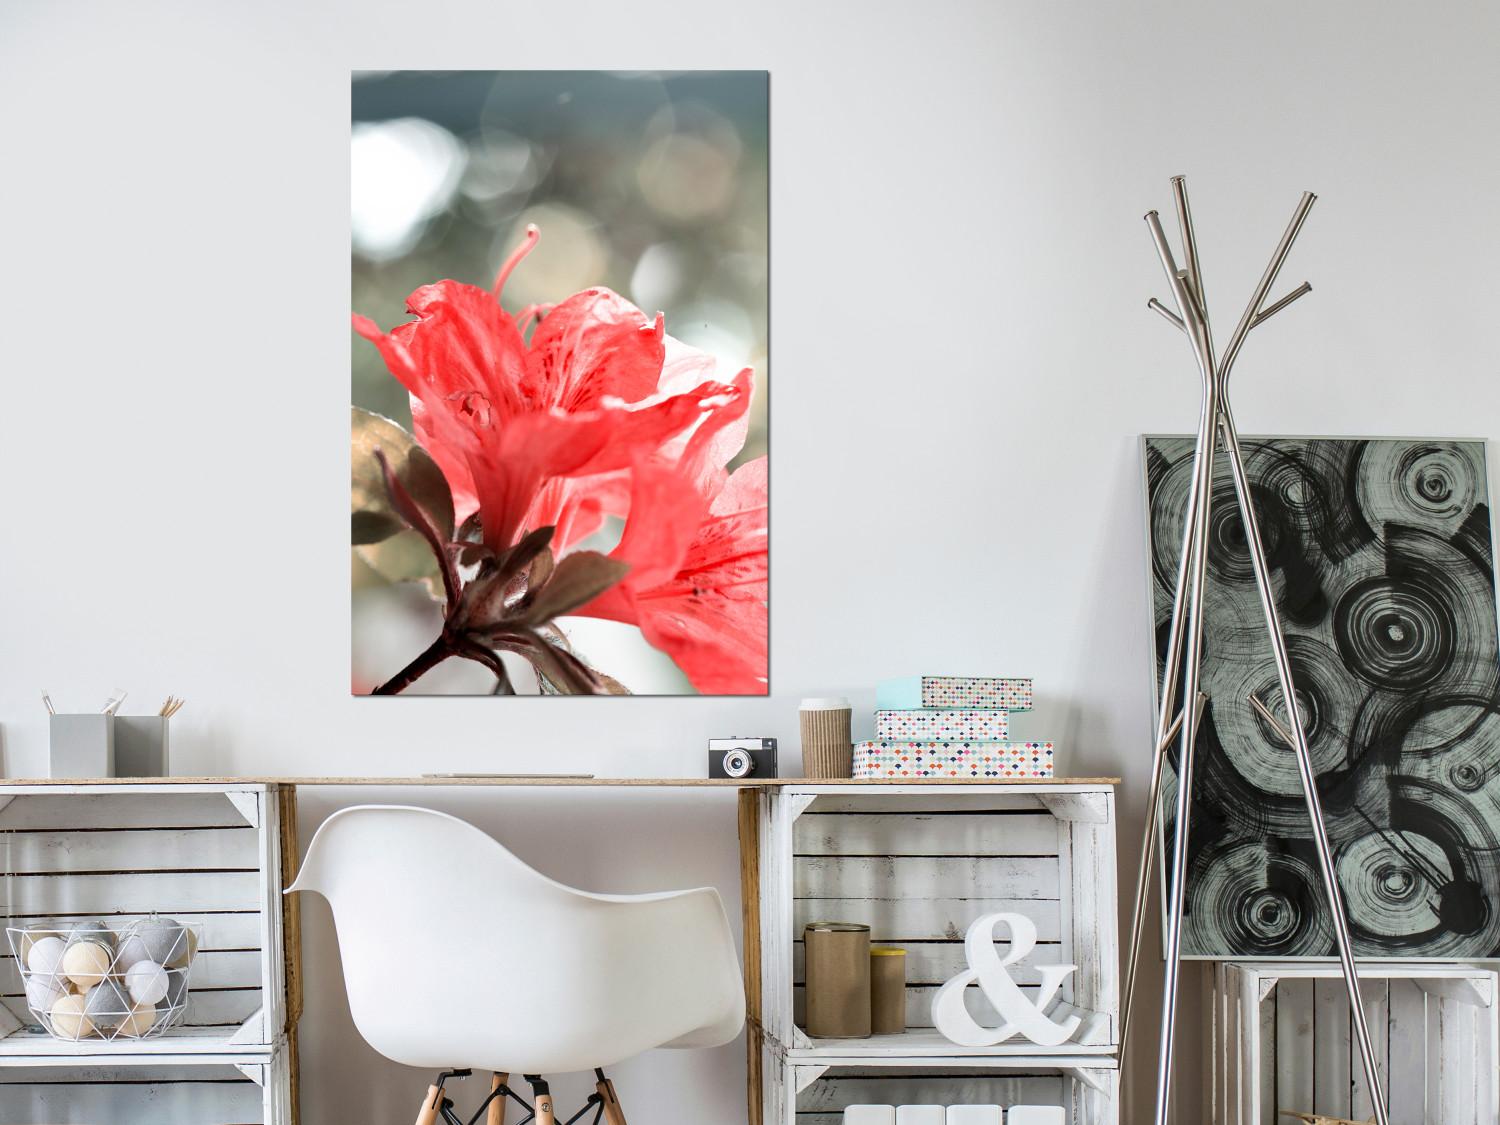 Cuadro decorativo Hibiscus red - una foto minimalista de una ramita y flores